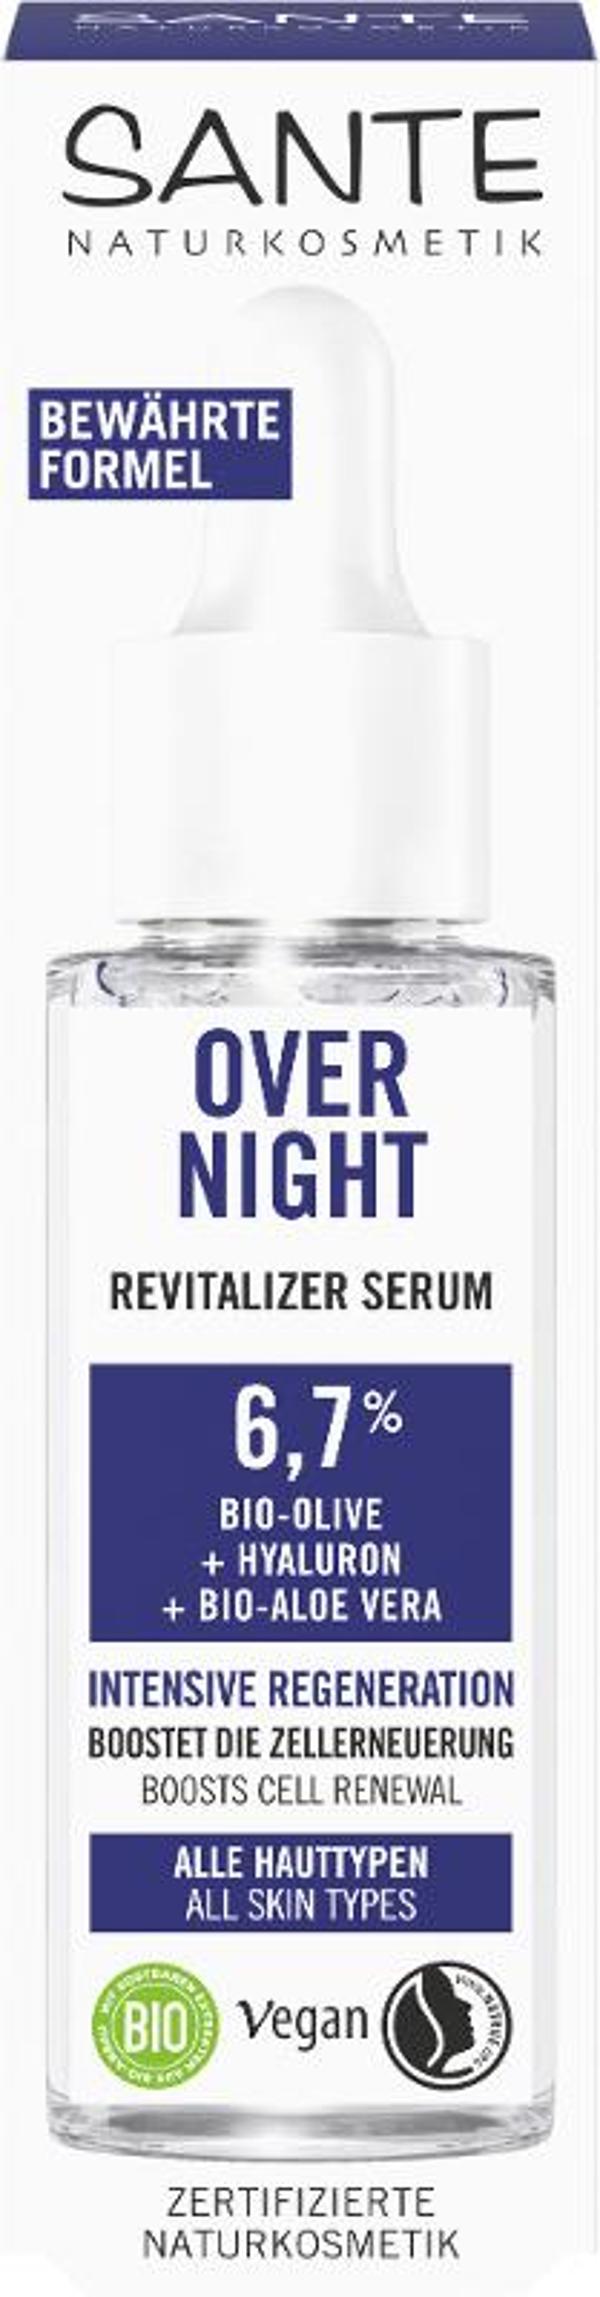 Produktfoto zu Overnight Revitalisierendes Serum Bio-Olive 30ml